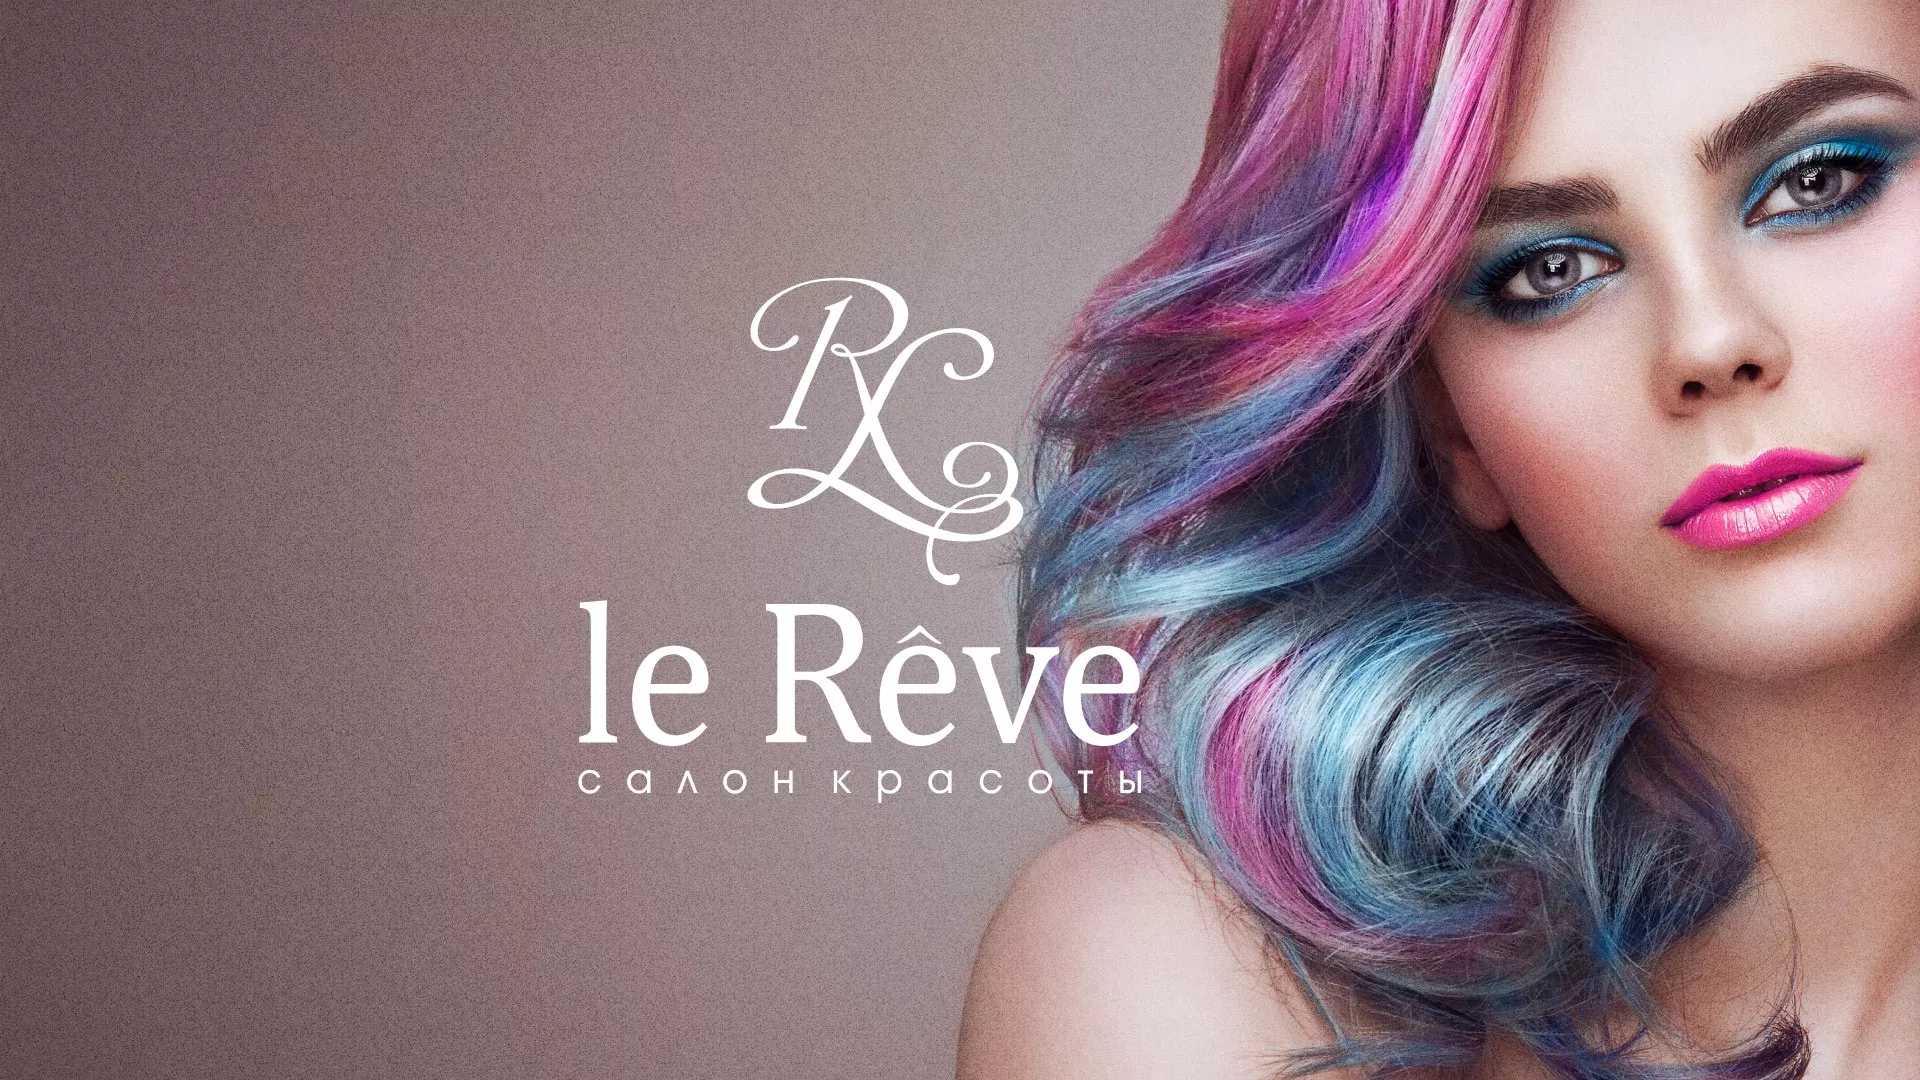 Создание сайта для салона красоты «Le Reve» в Сенгилее